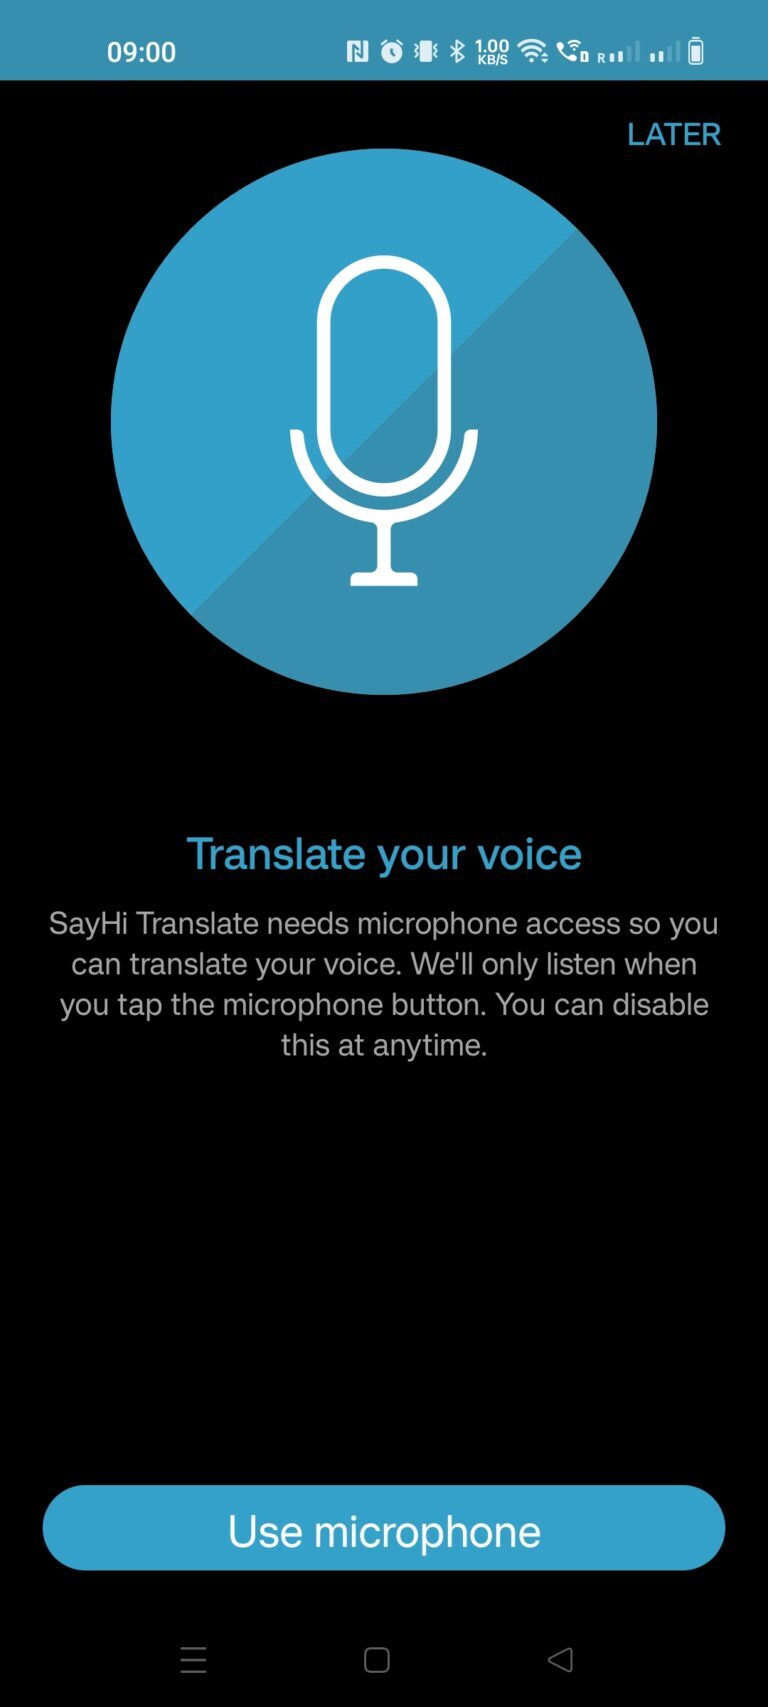 Übersetzung von per Mikrofon aufgenommener Sprache in der SayHi-App